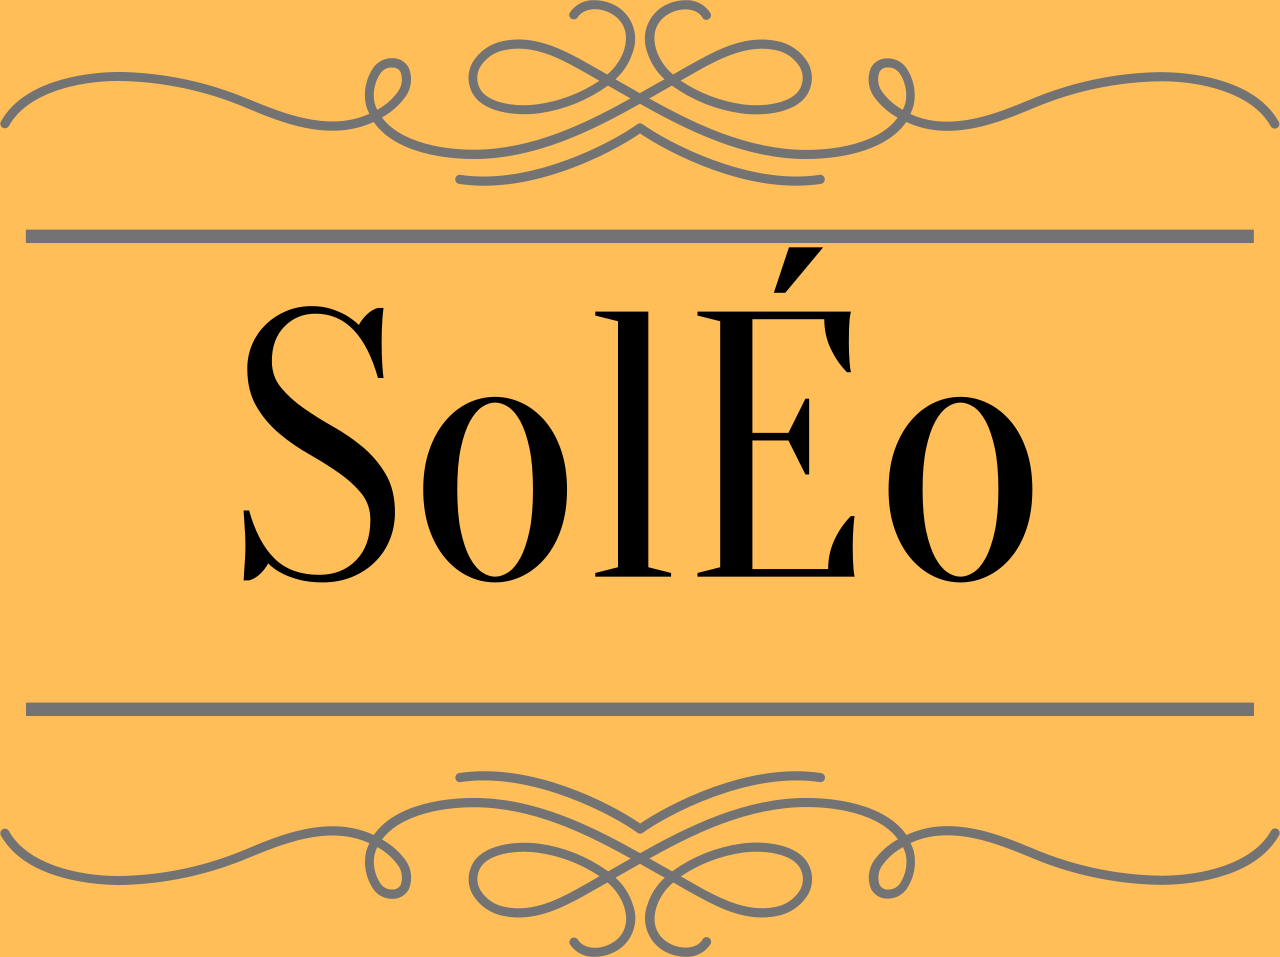 SolÉo's logo